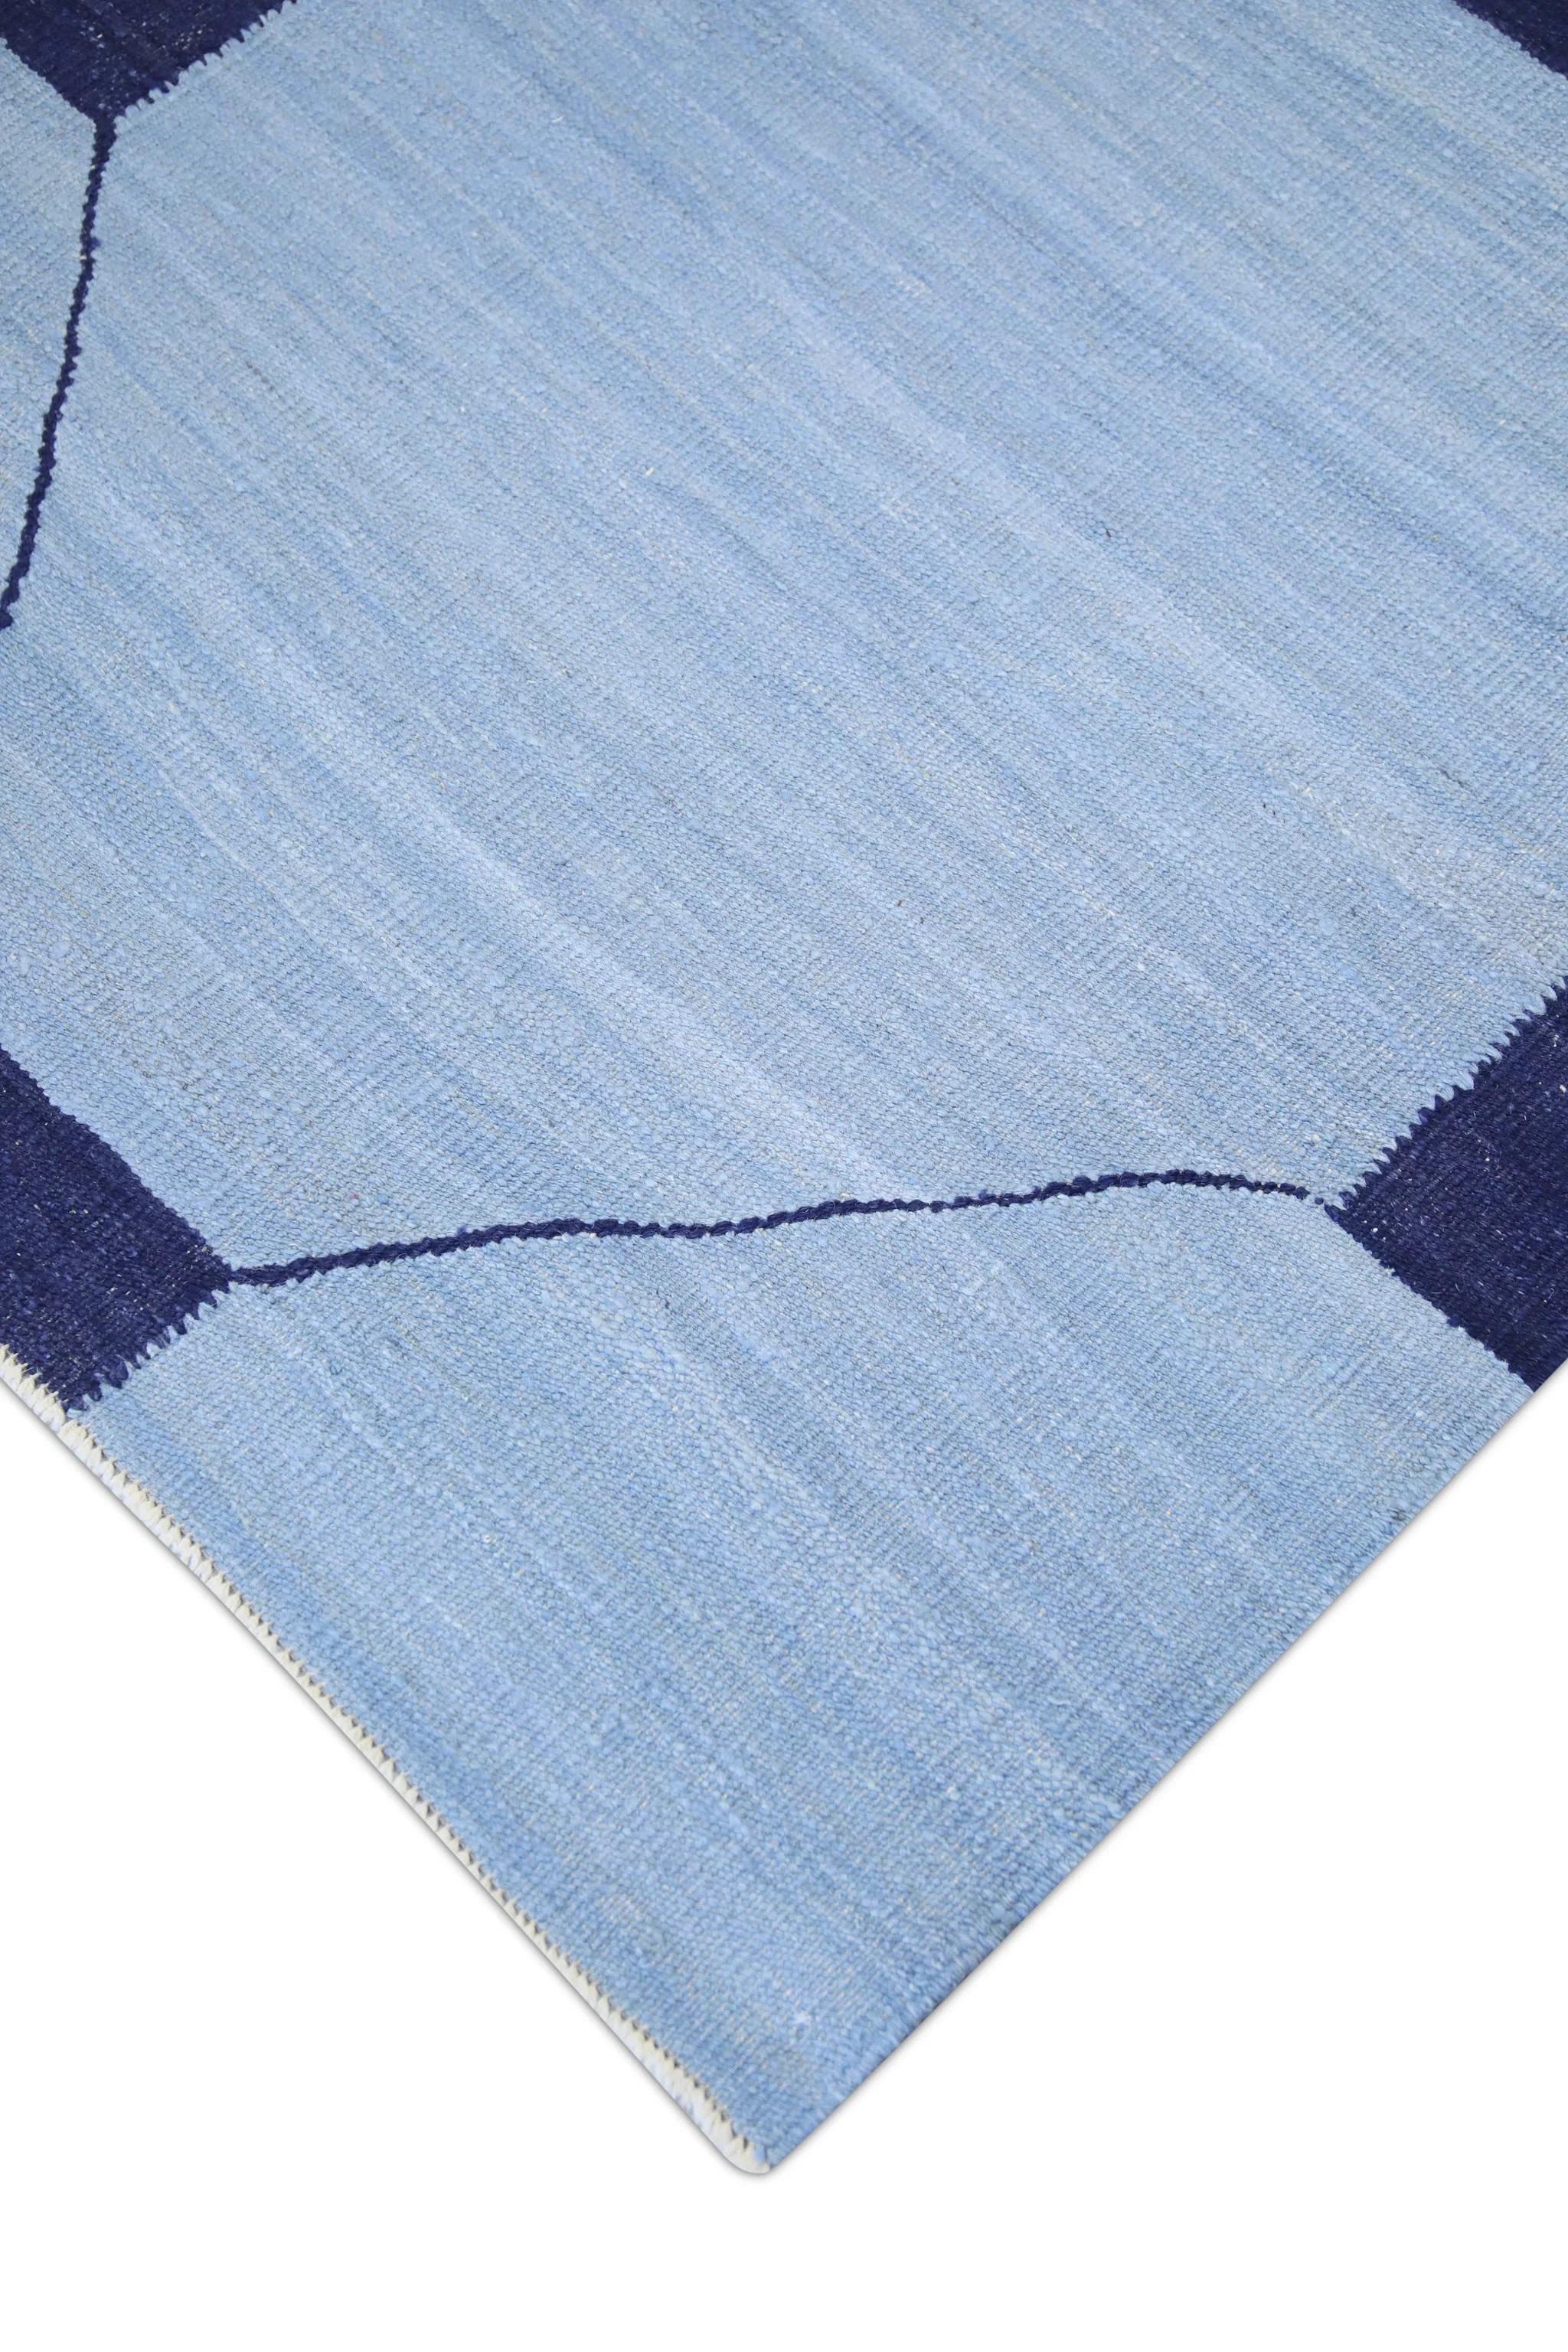 Vegetable Dyed Blue & Navy Geometric Design Flatweave Handmade Wool Rug 10'5